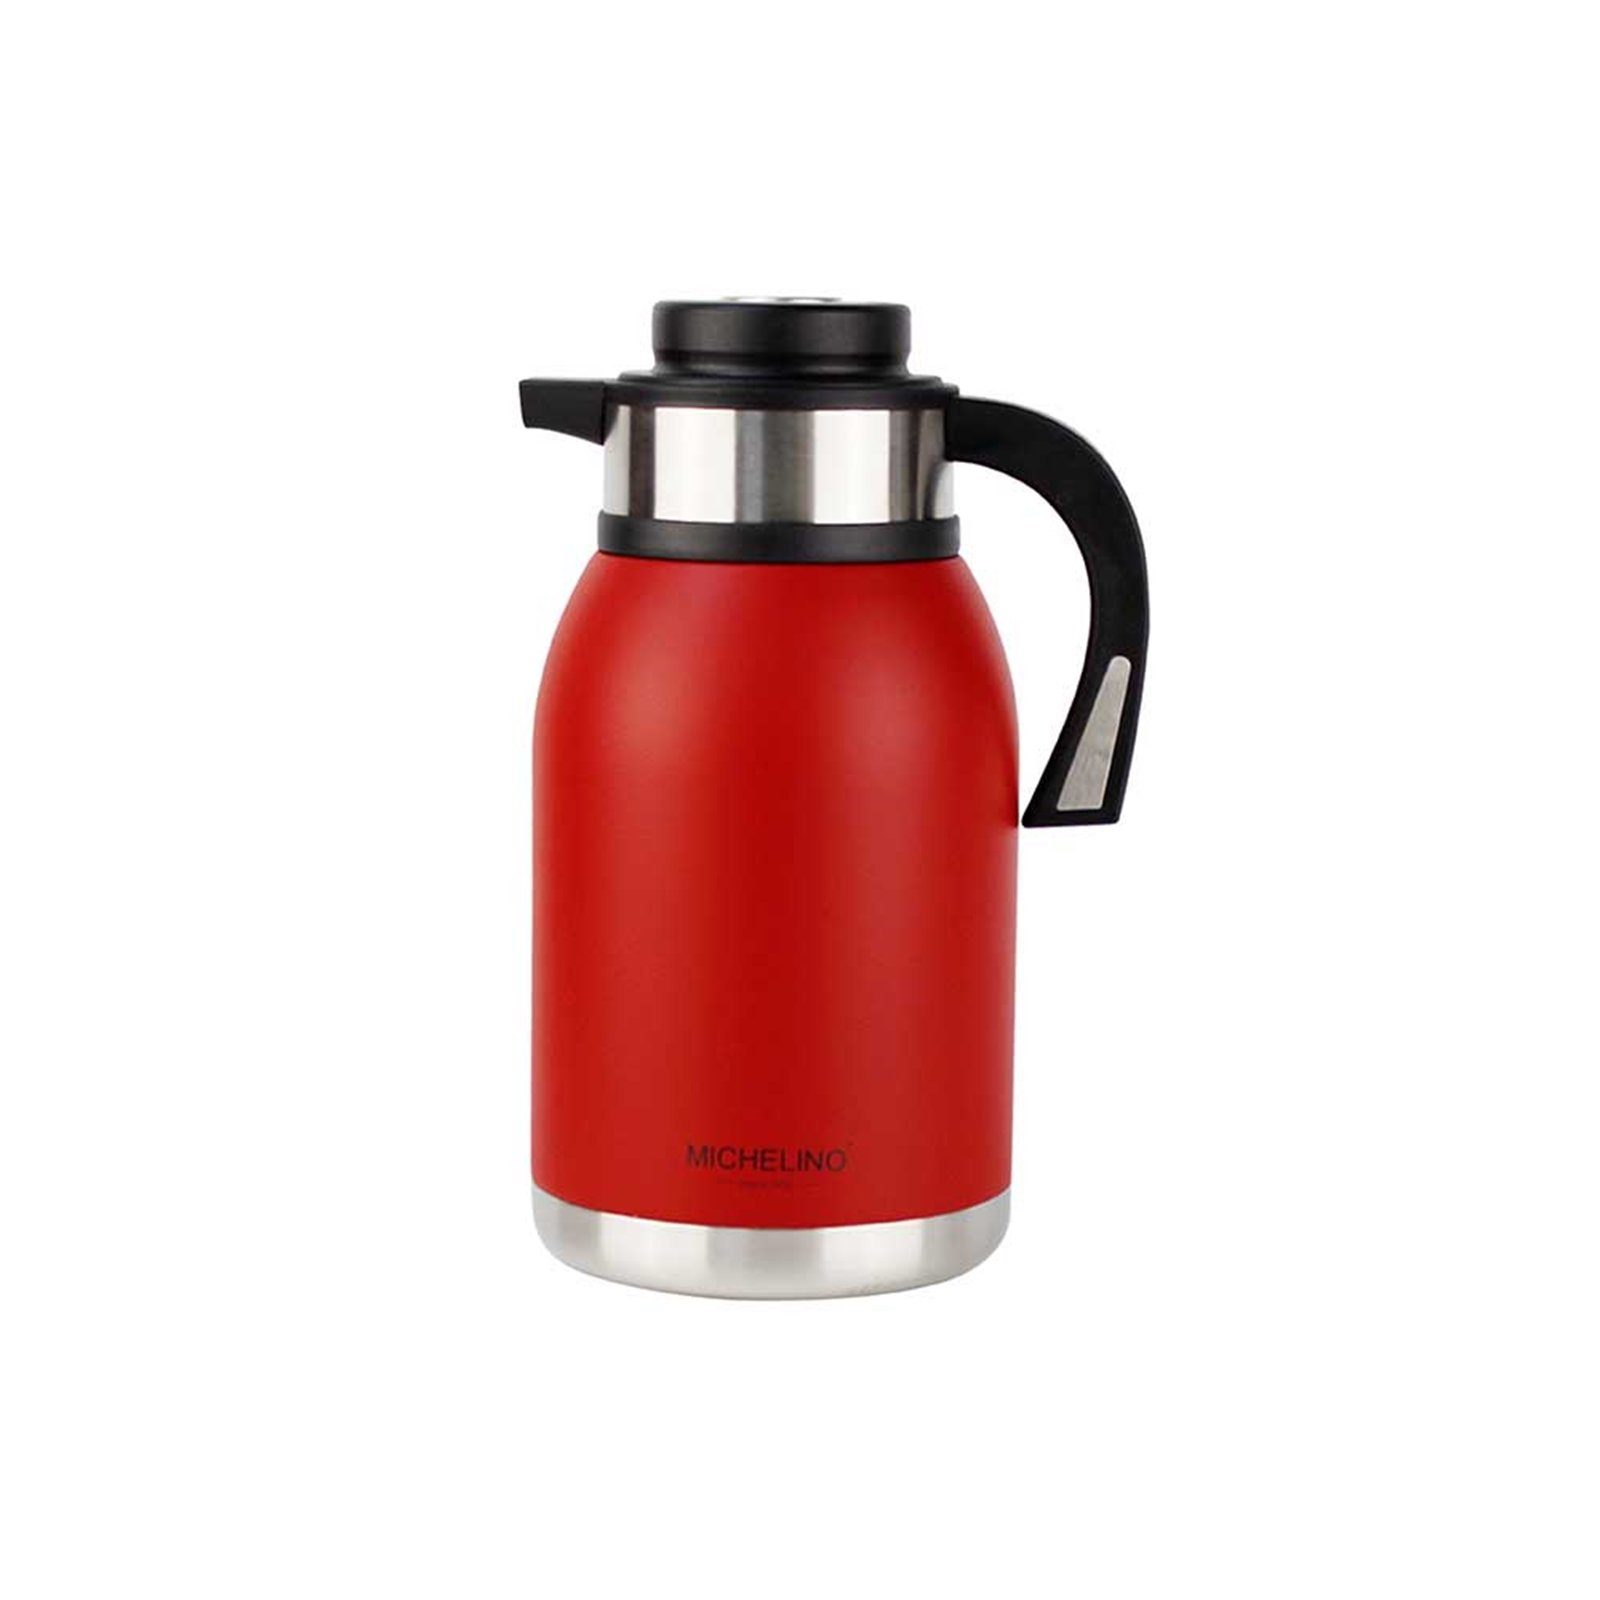 Michelino Isolierkanne Isolierkanne 2 Liter Edelstahl, 2 l, (Stück), Kaffeekanne Teekanne Rot